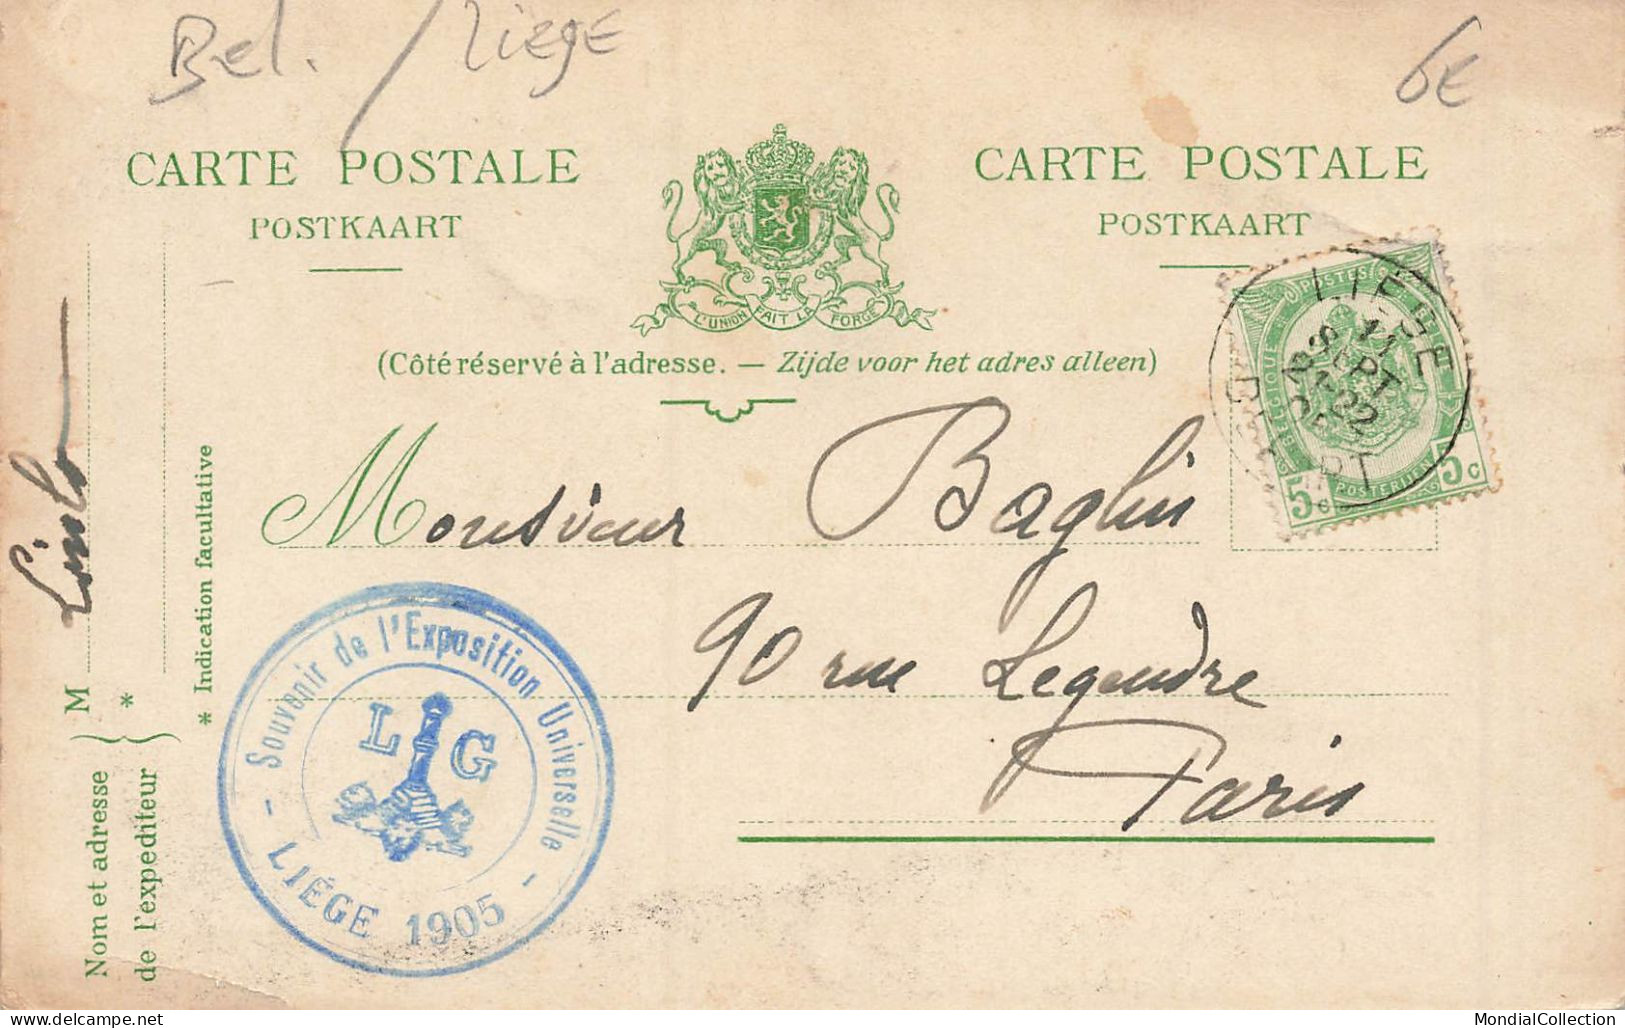 MIKIBP11-061- BELGIQUE LIEGE EXPOSITION 1905 UN RECRUTEMENT MATINAL RETOUR D UN CONGRES PAR ILLUSTRATEUR - Luik